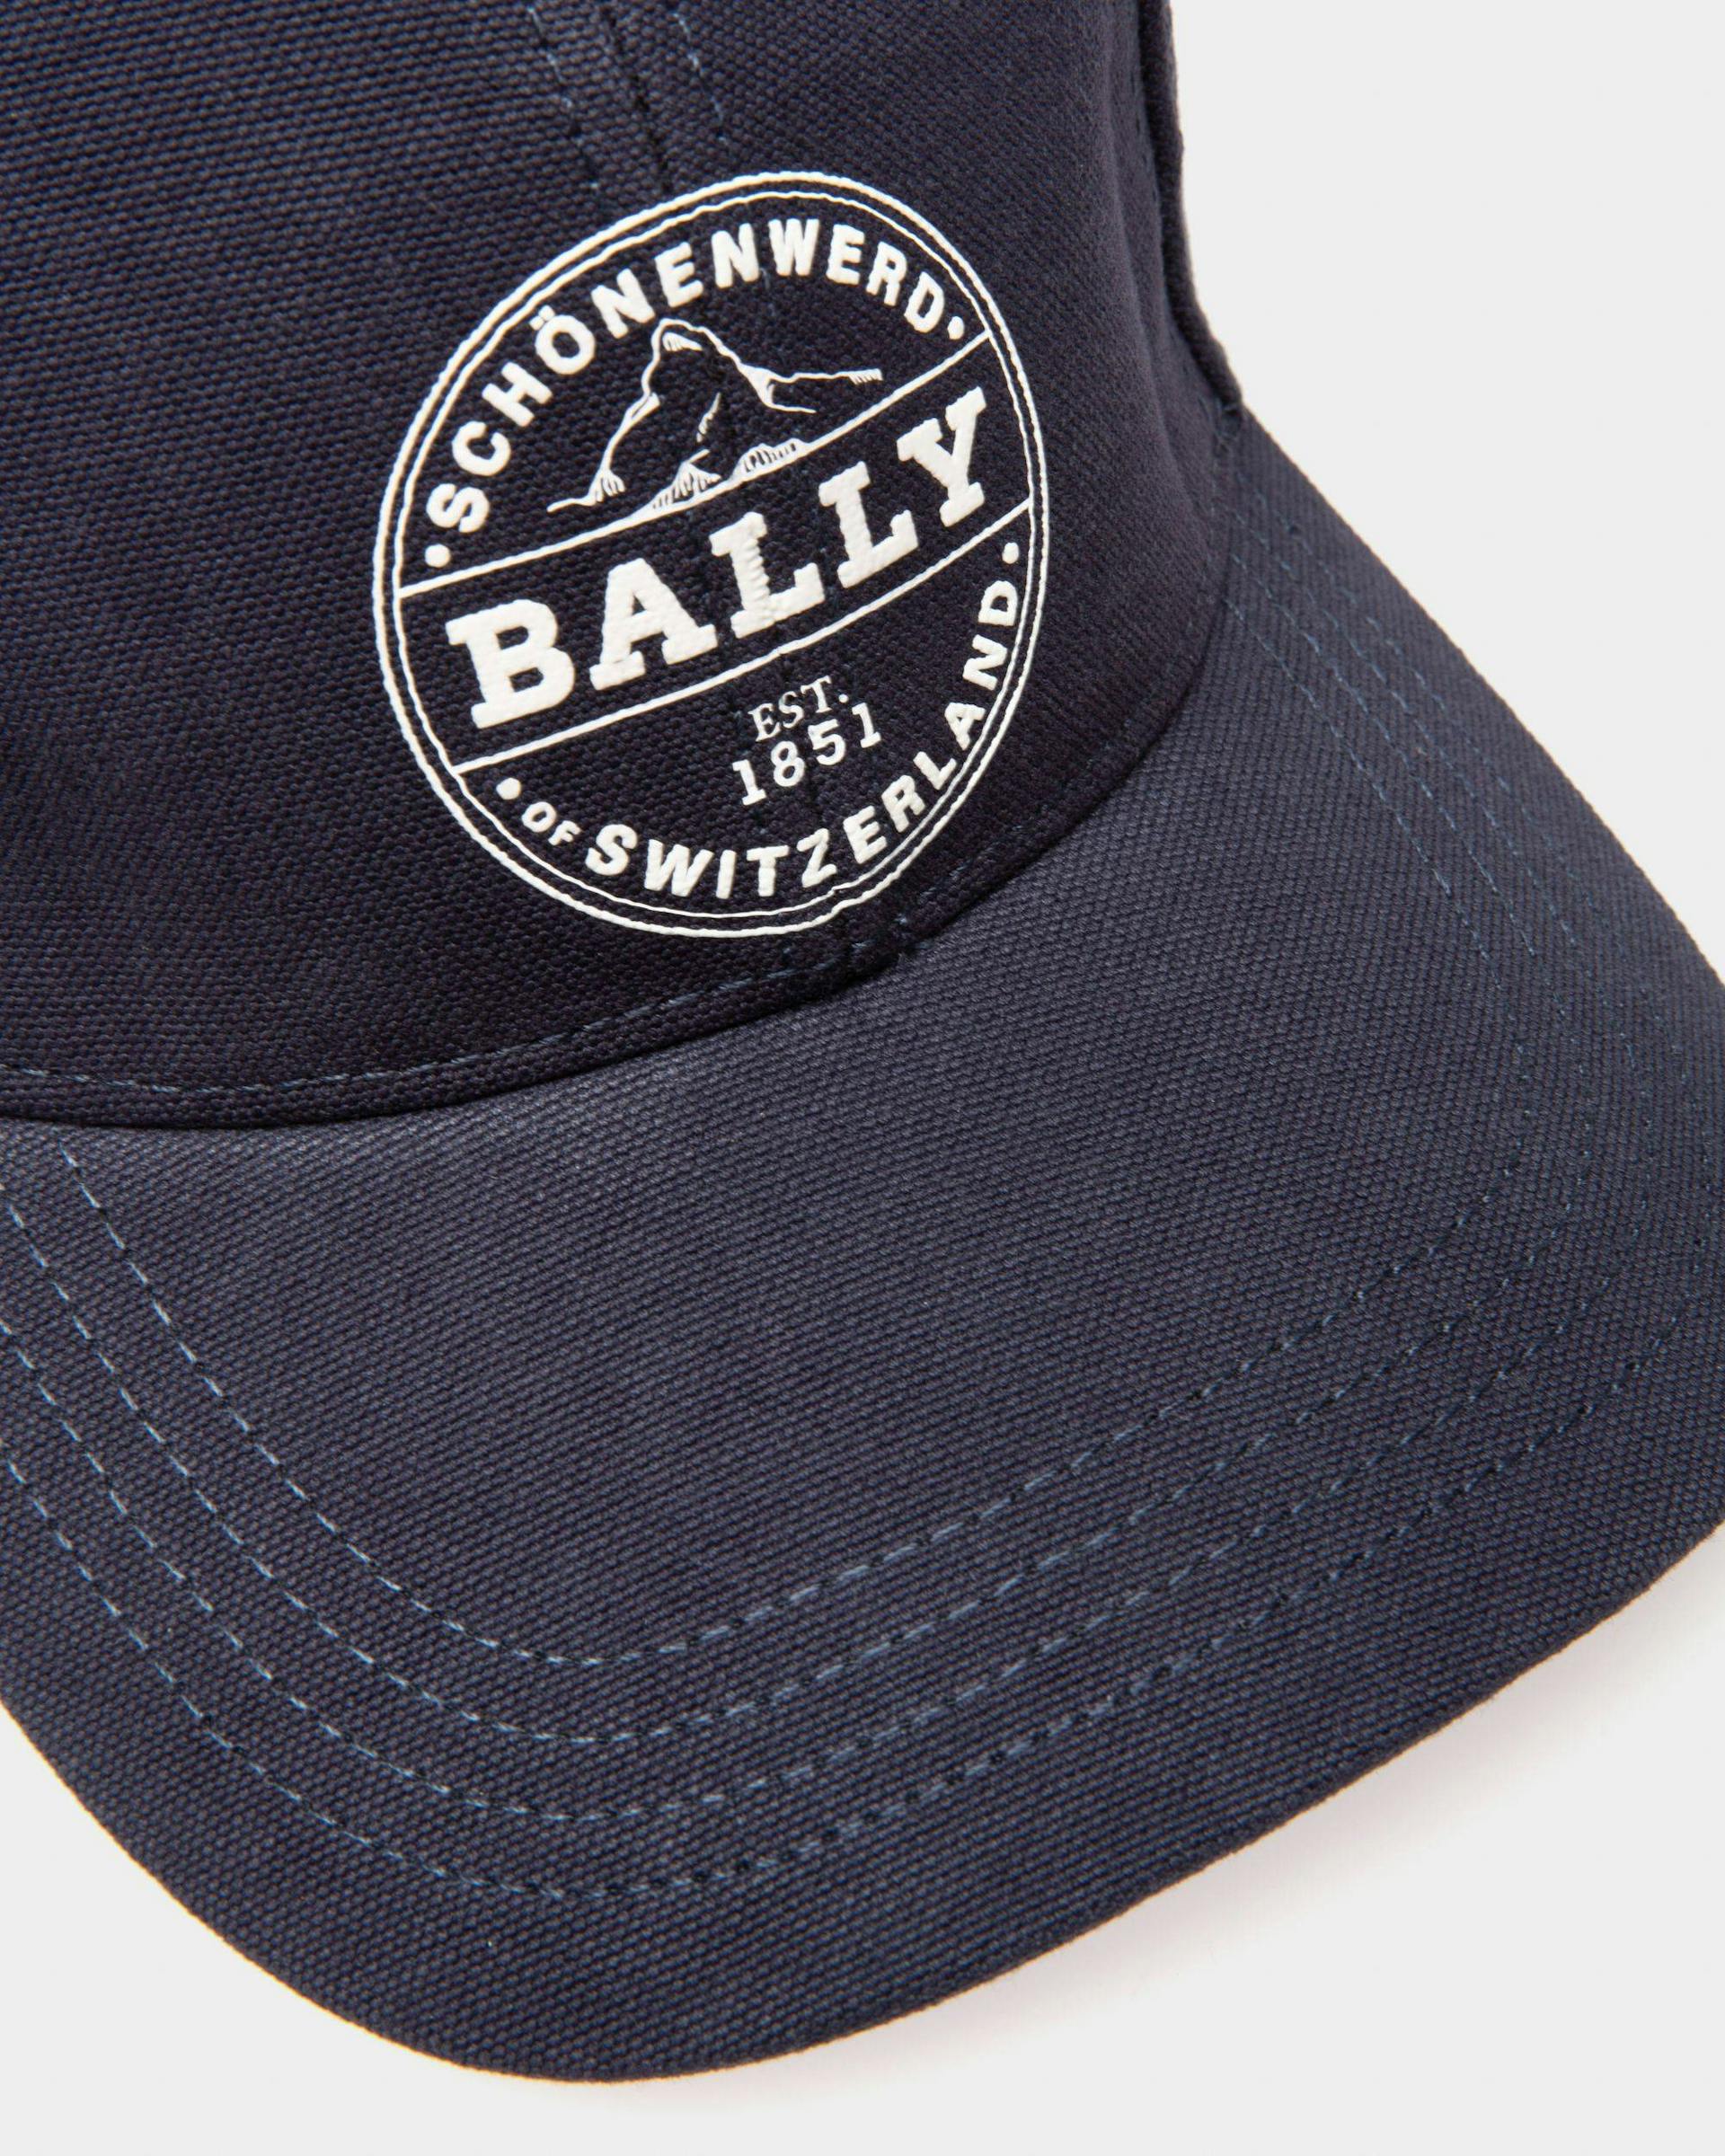 Casquette De Baseball En Coton Biologique Bleu Marine - Homme - Bally - 03